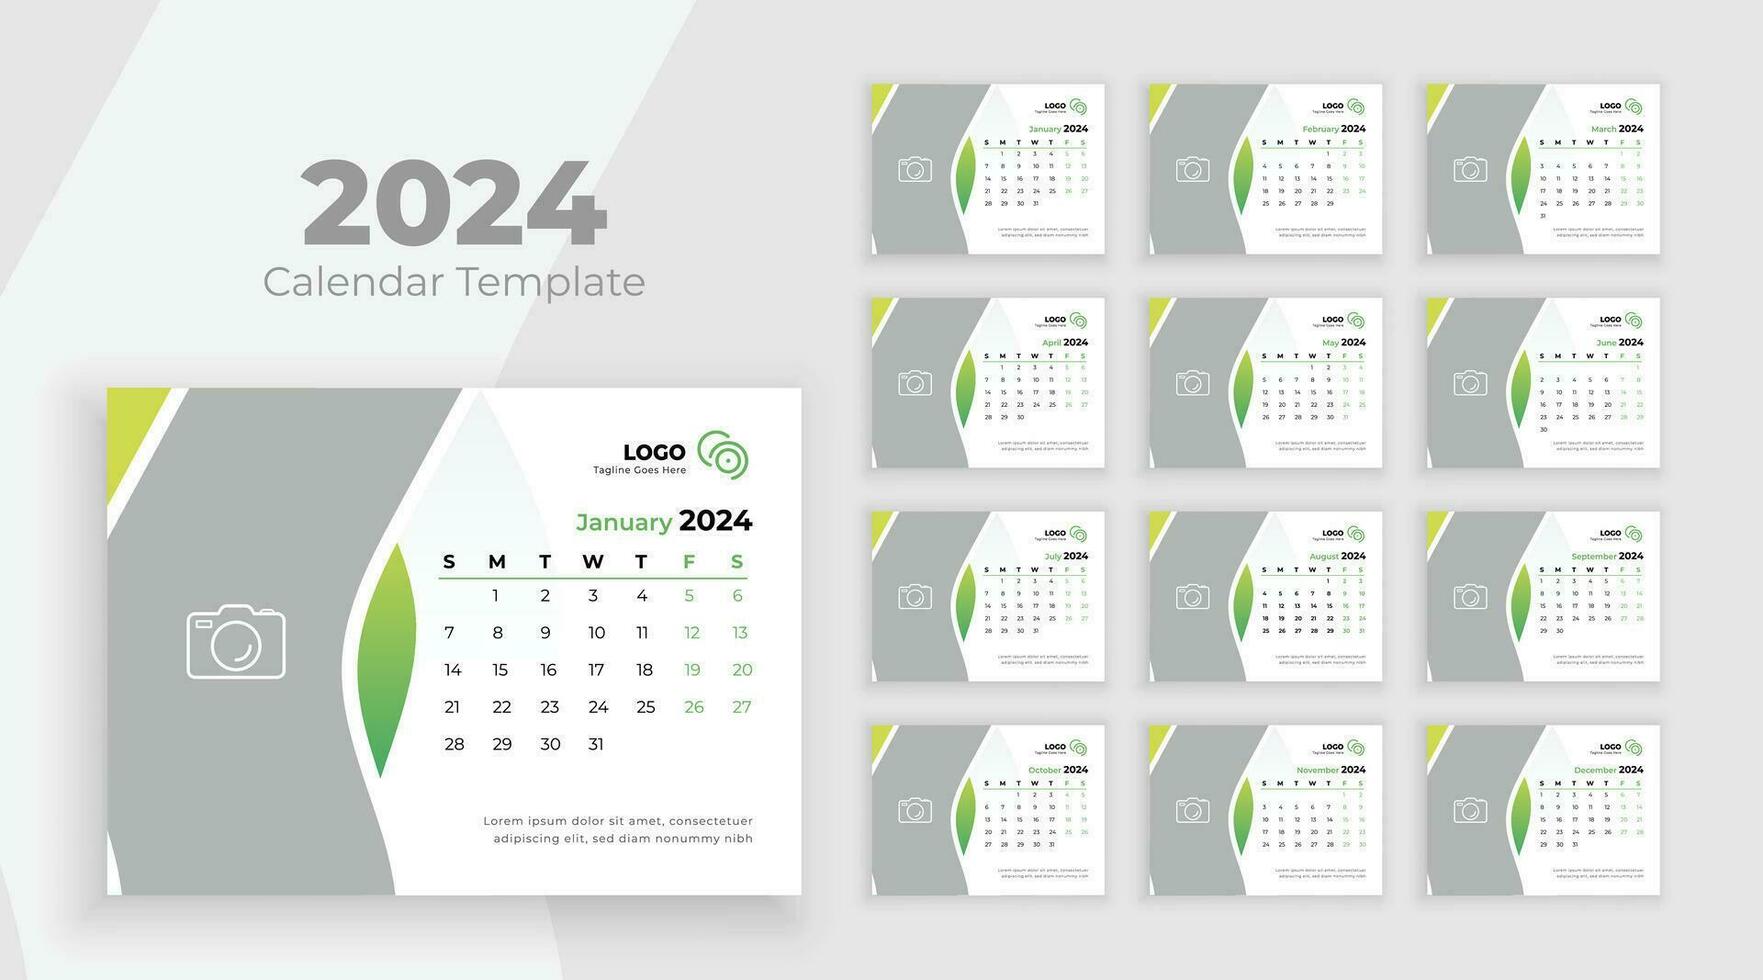 escritorio calendario modelo 2024. semana comienzo en domingo. minimalista escritorio calendario 2024 plantilla, planificador, negocio modelo vector